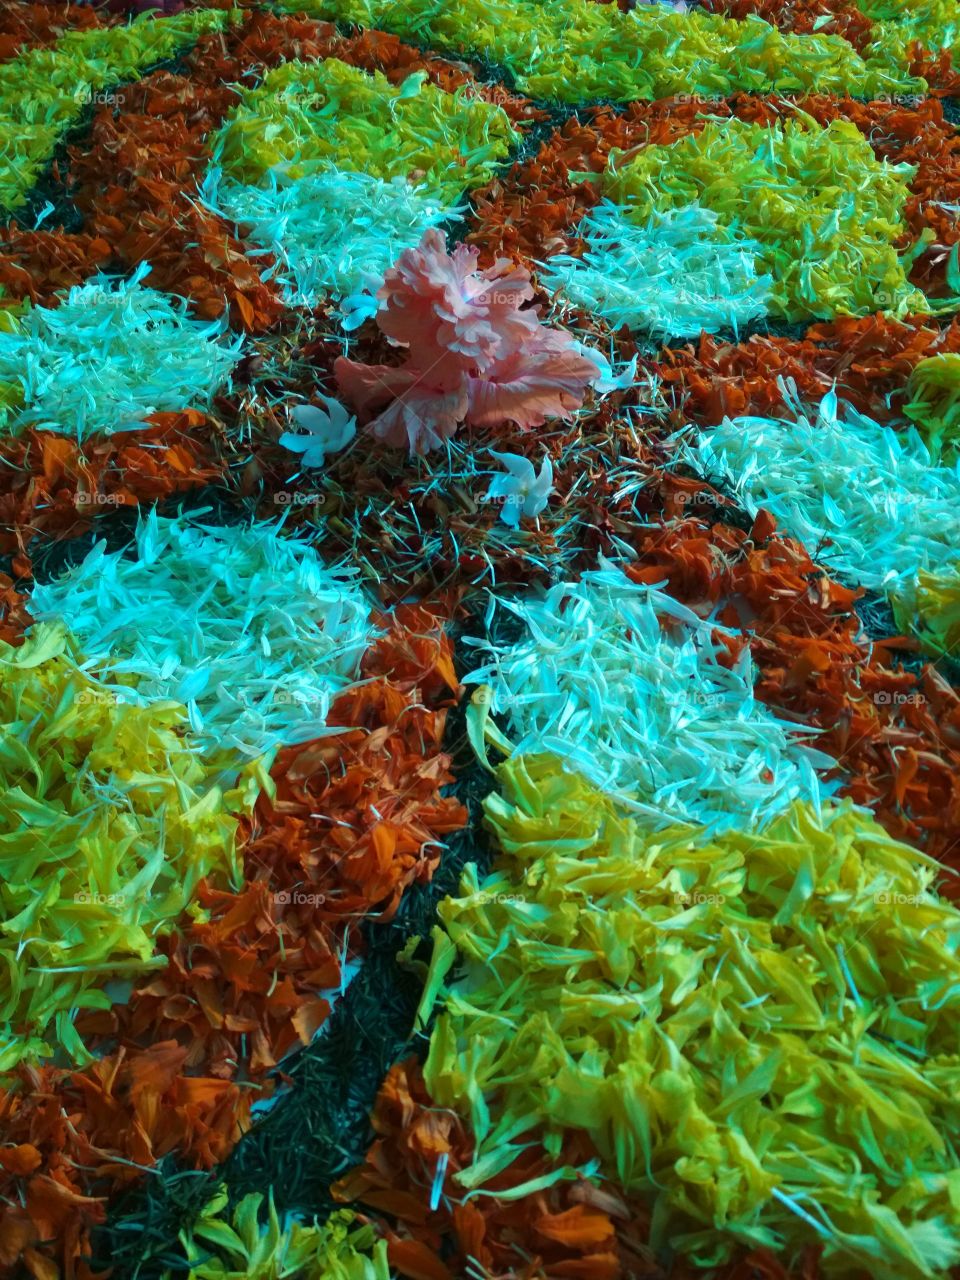 flower carpet